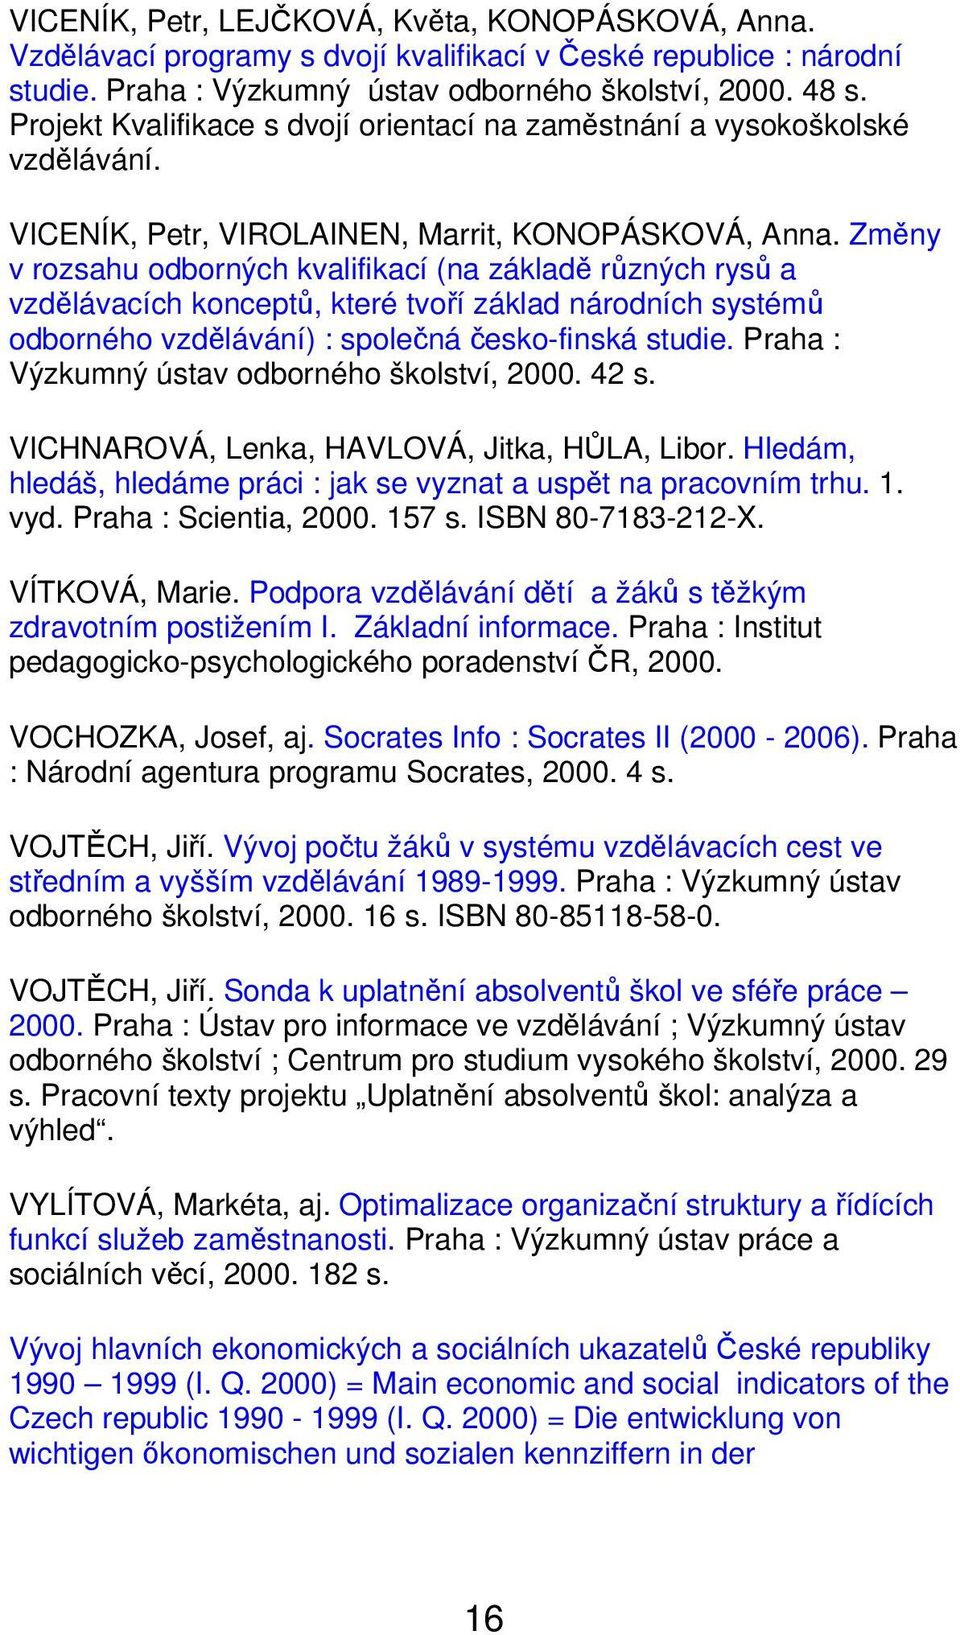 Změny v rozsahu odborných kvalifikací (na základě různých rysů a vzdělávacích konceptů, které tvoří základ národních systémů odborného vzdělávání) : společná česko-finská studie.